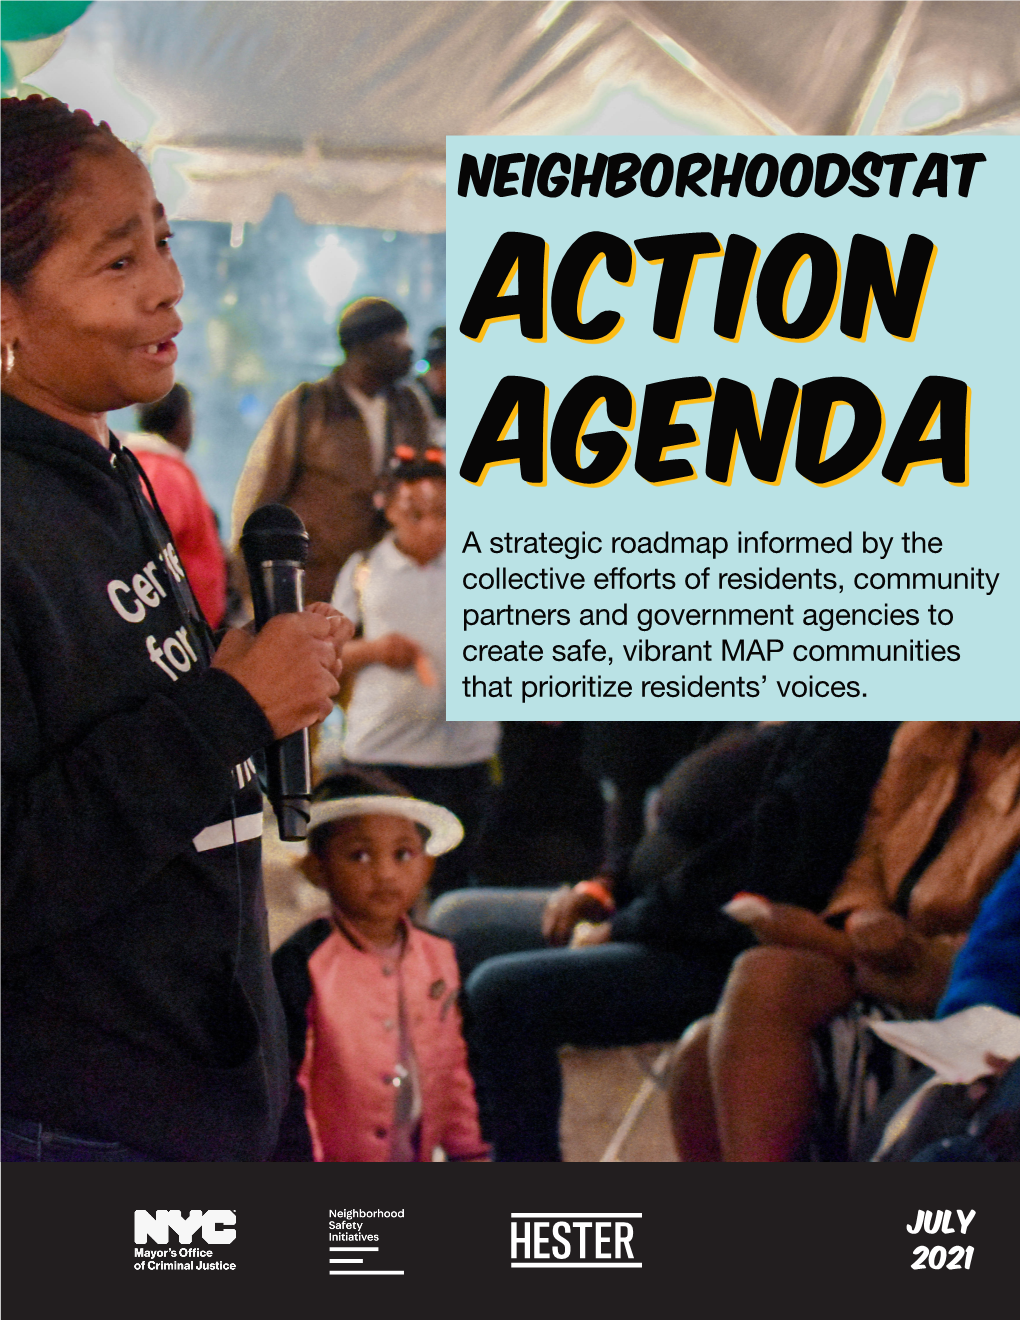 The Neighborhoodstat 2021 Action Agenda Is Here!